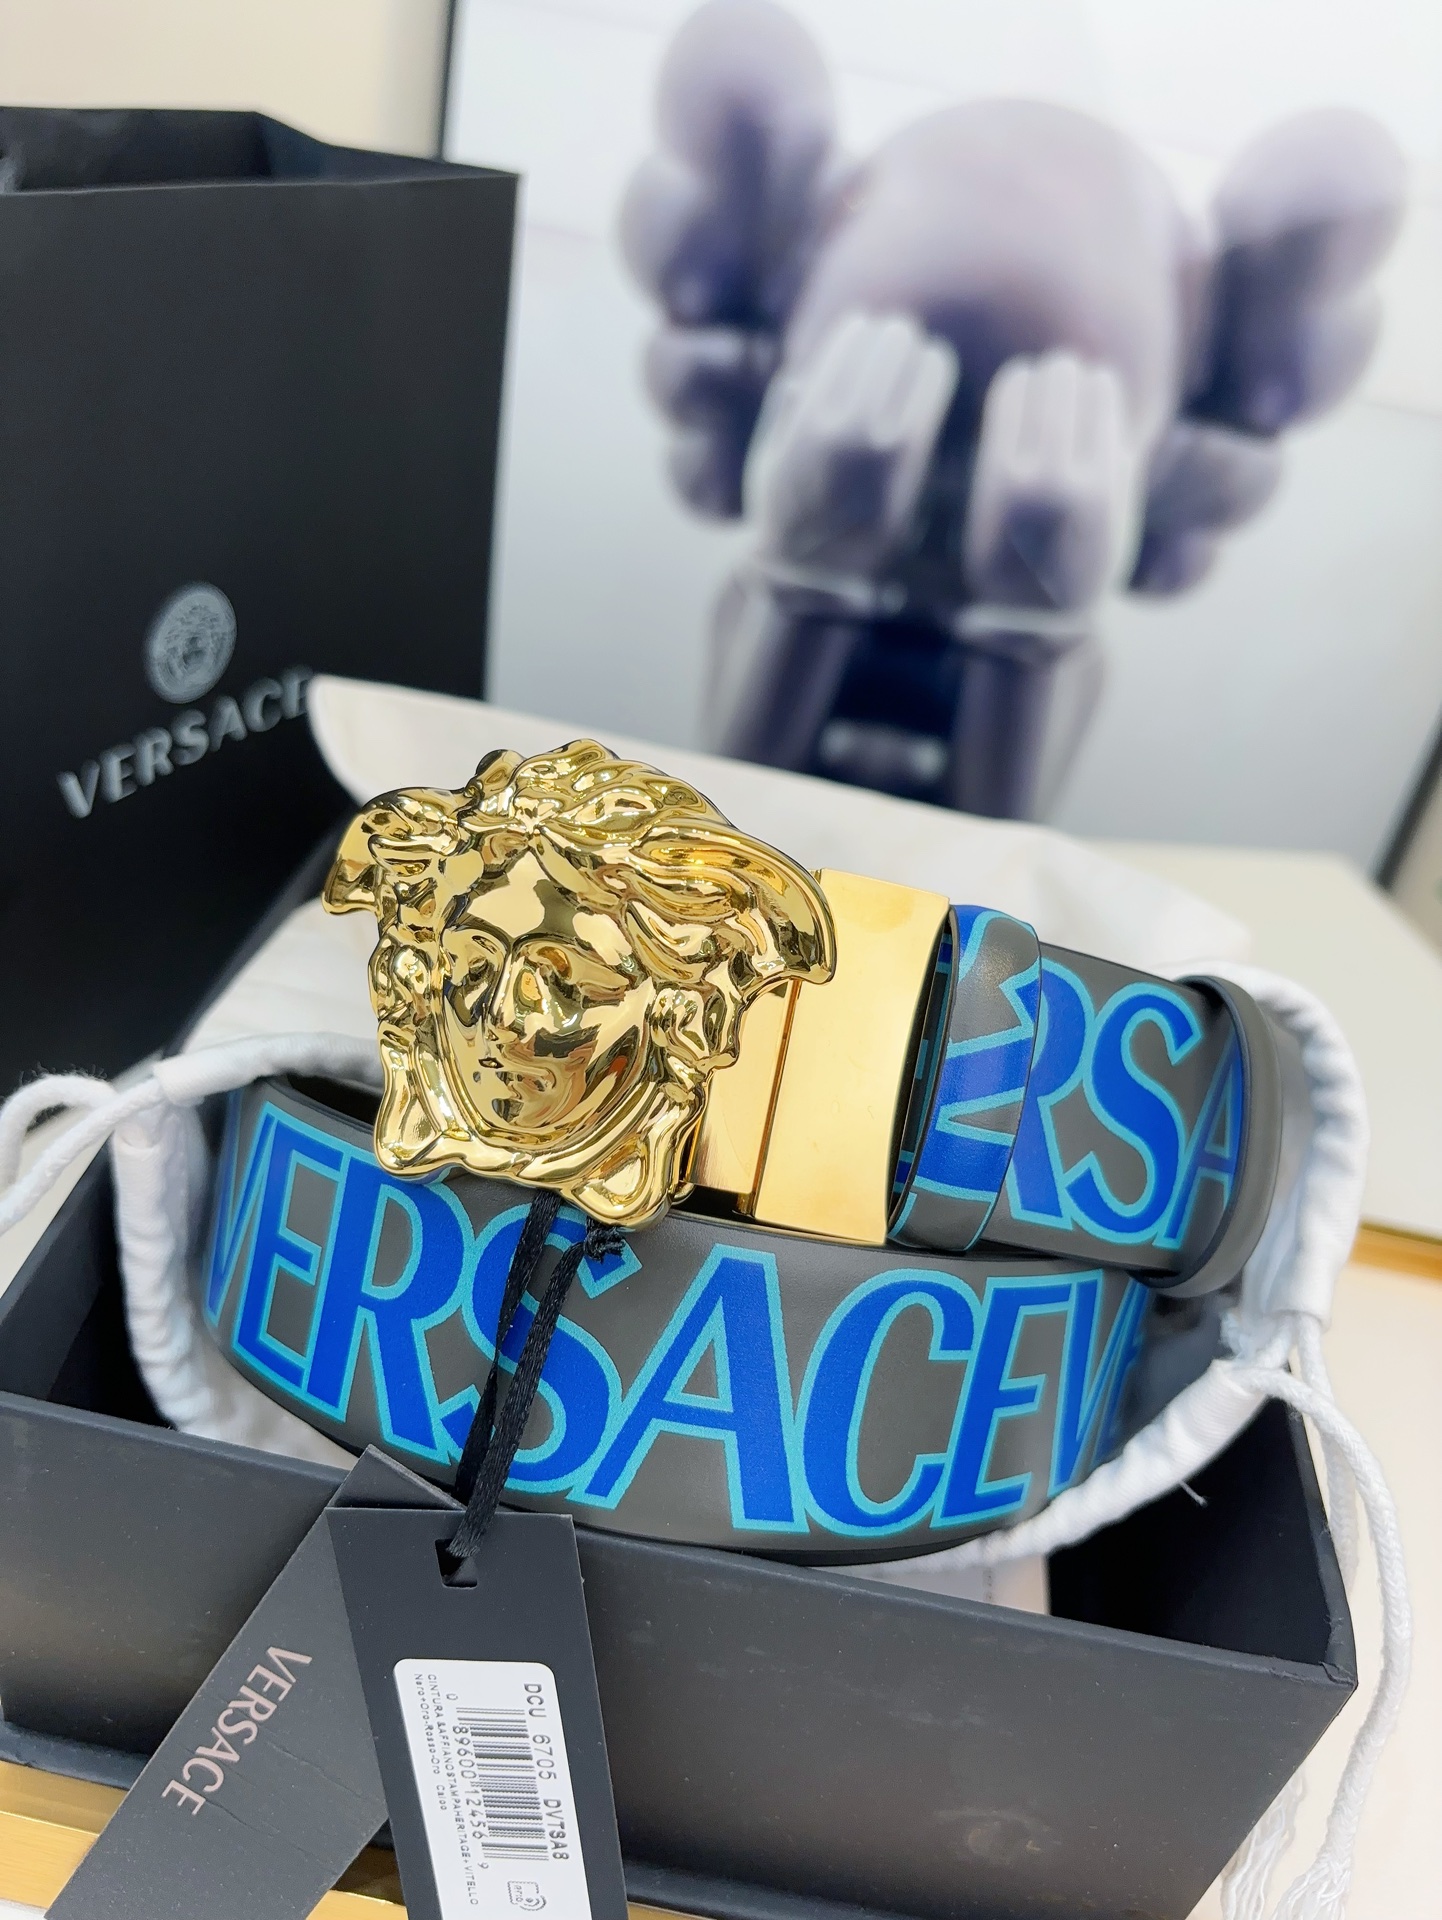 Versace范思哲的卡其色双面腰带采用小牛皮制成金色搭扣饰有品牌标志性的美杜莎头像一面饰有蓝色和绿色的